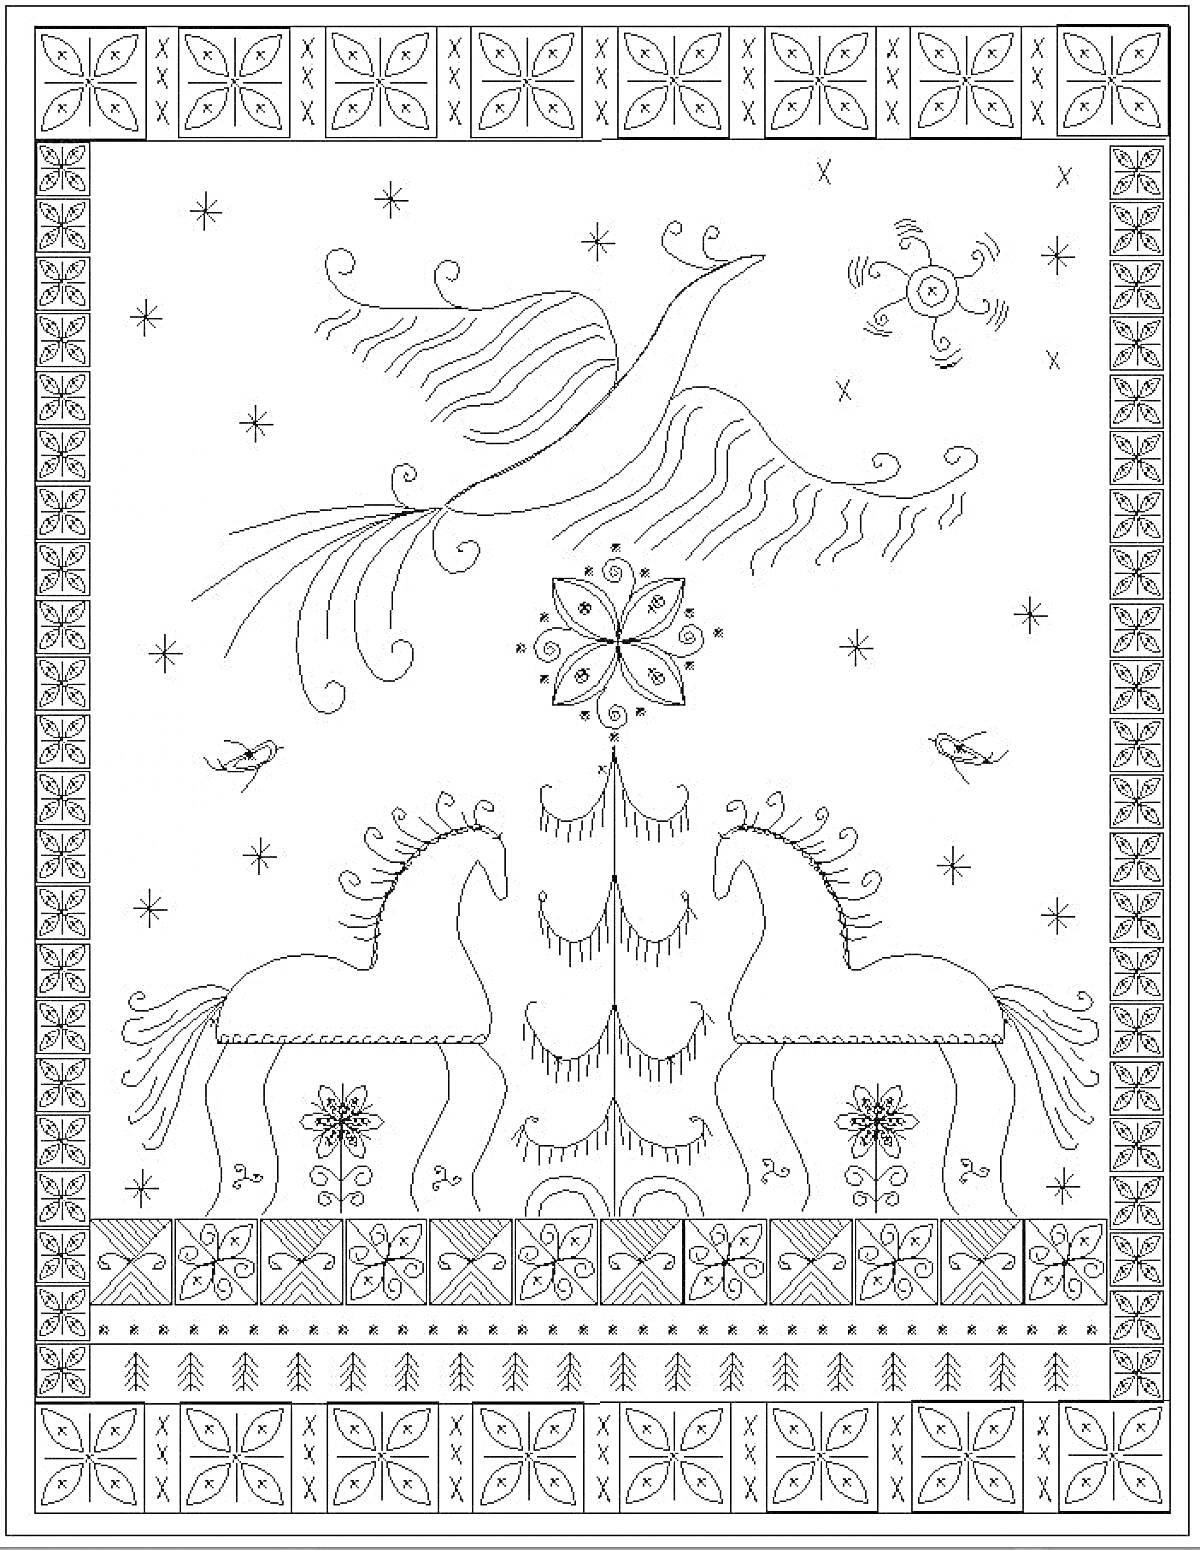 Раскраска Конь, дерево, птица, звезды, цветочный орнамент, круглый символ, бордюр с узорами